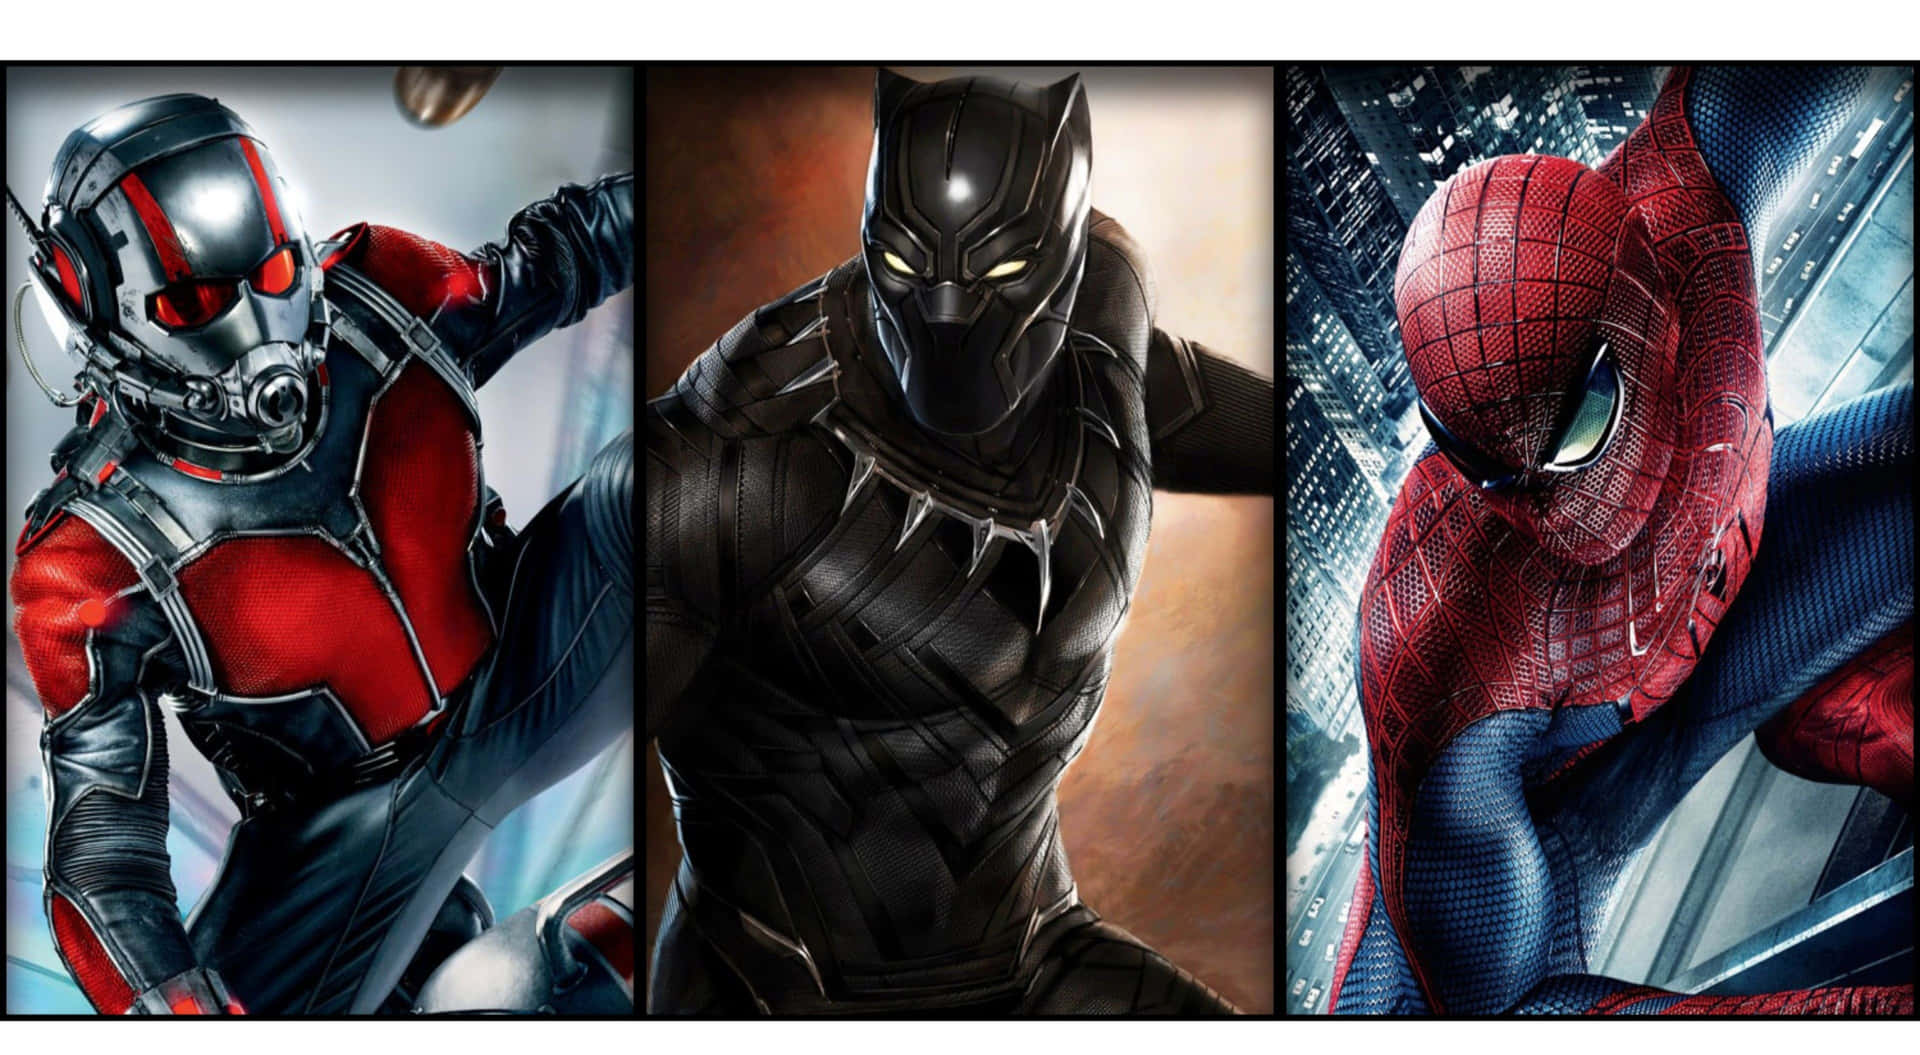 Ultimate Marvel Heroes in 4K